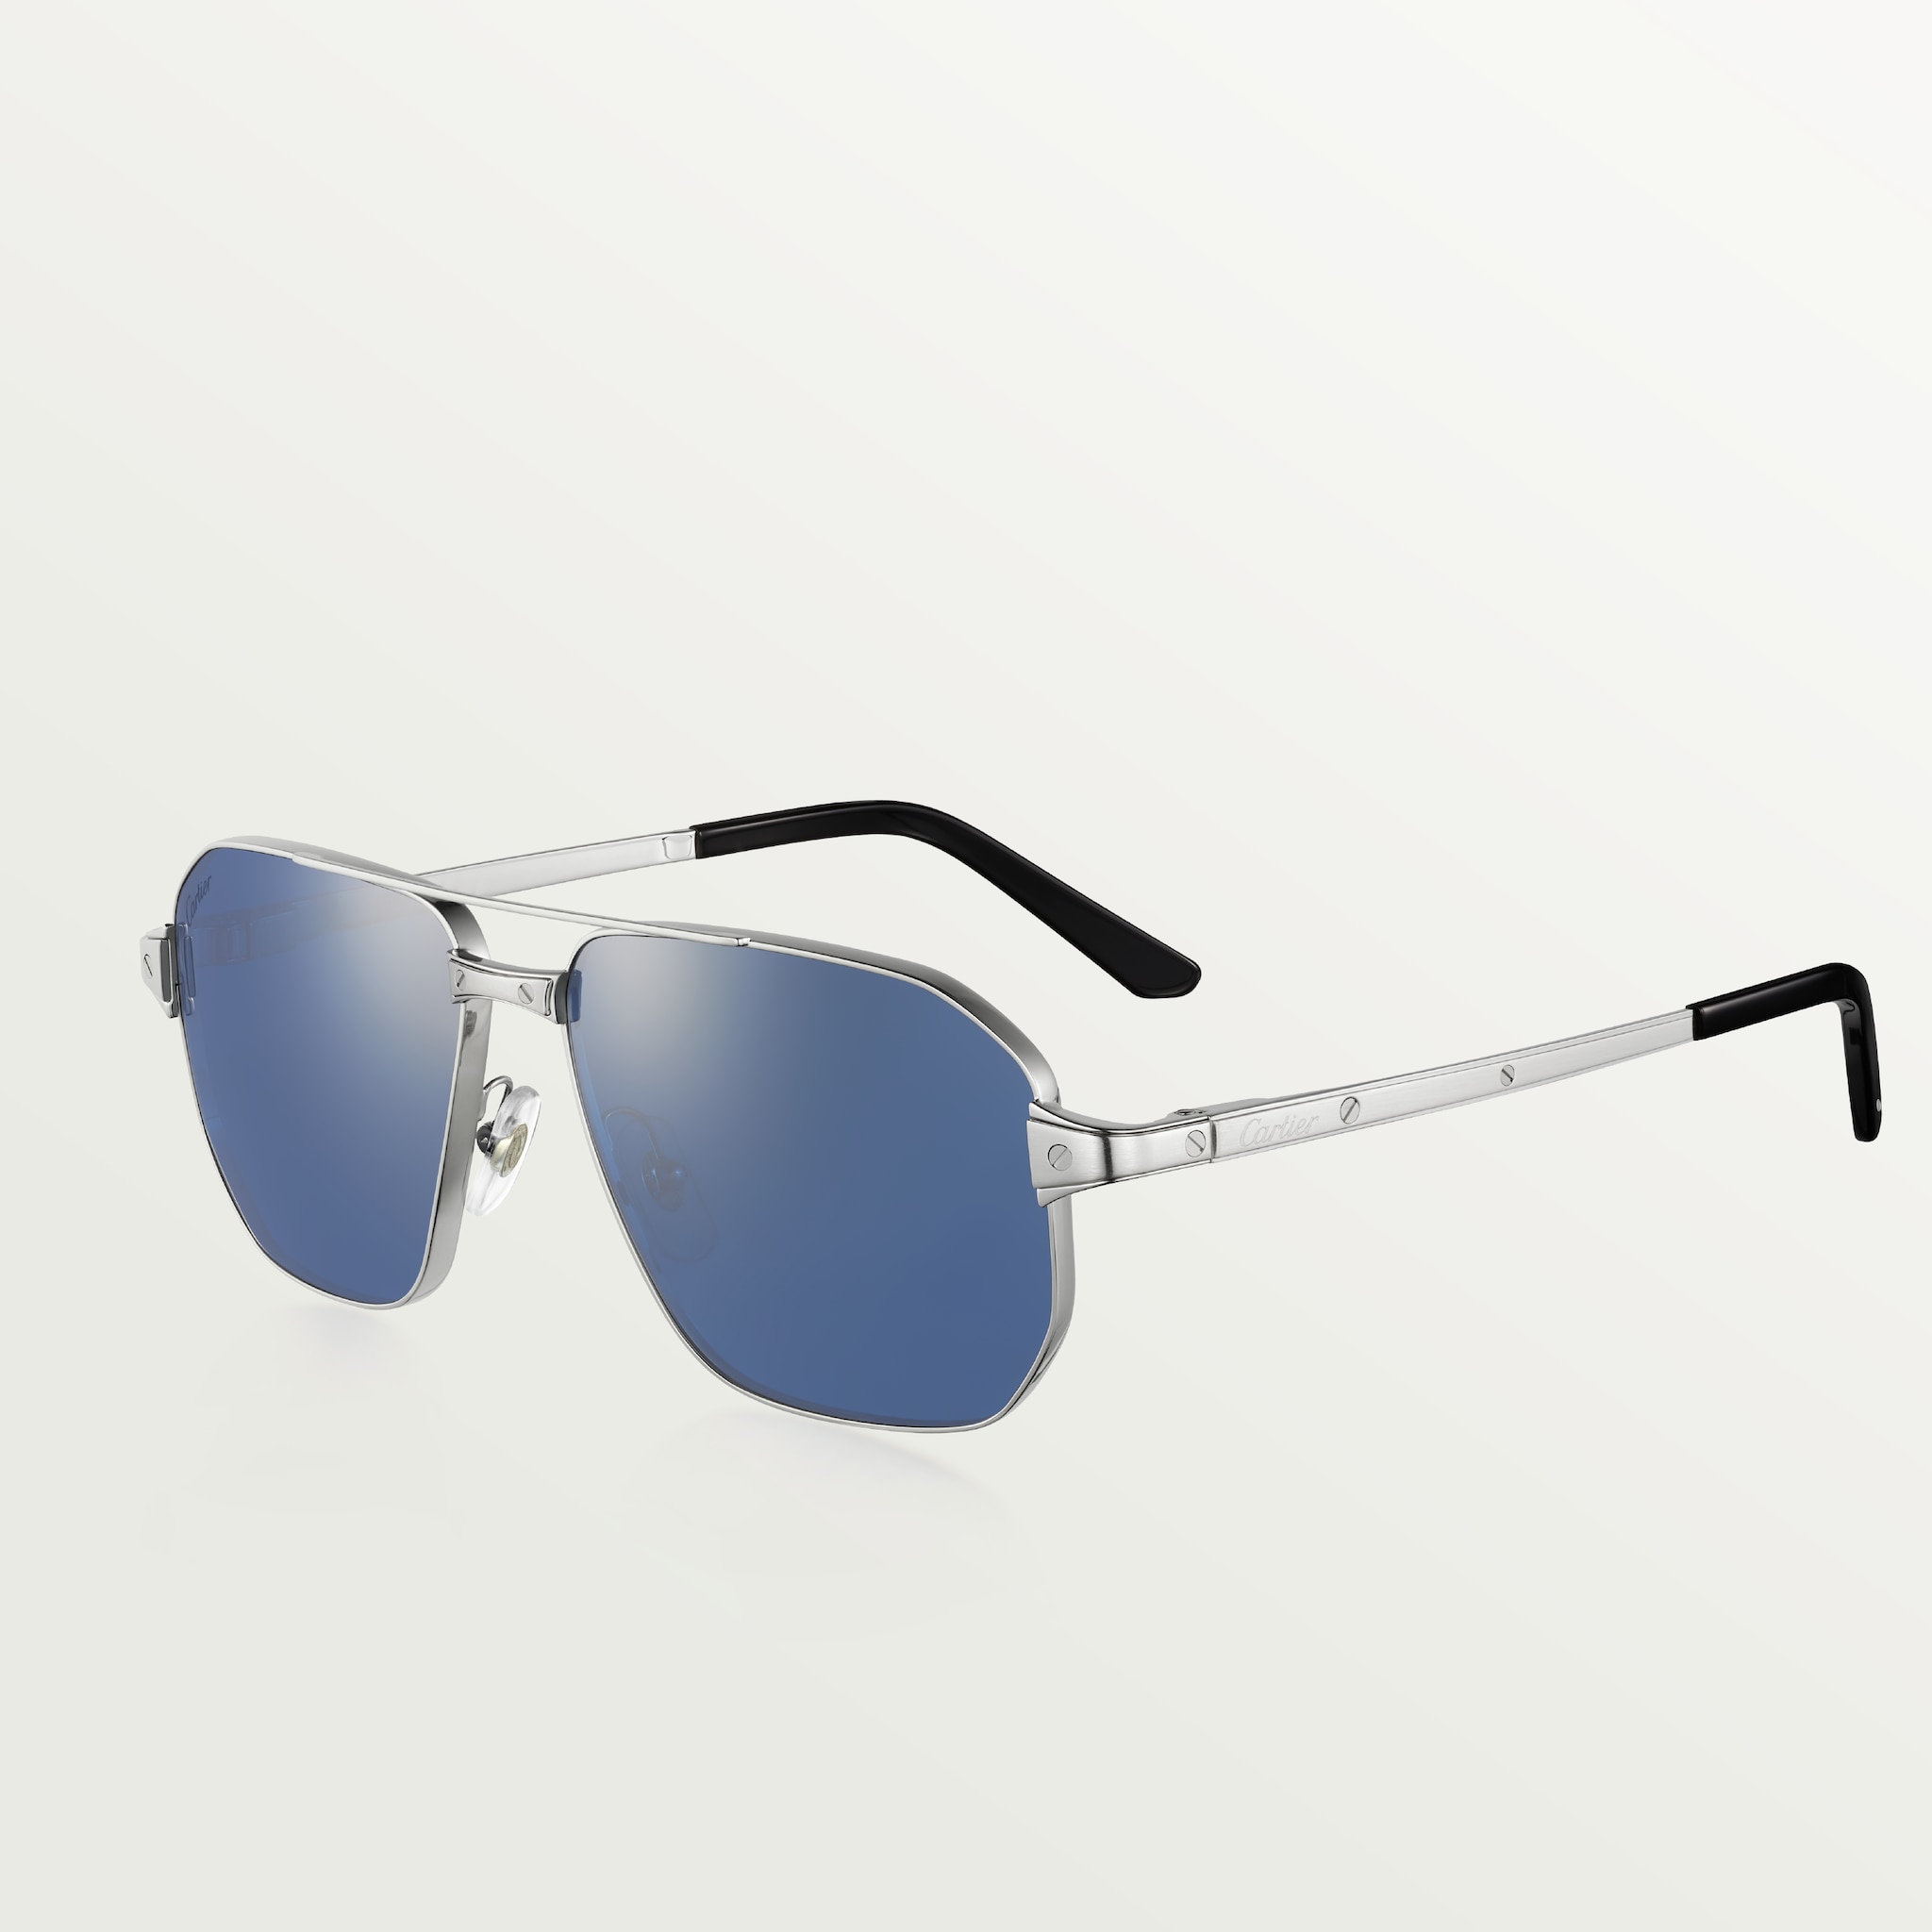 Gafas de sol Santos de CartierMetal acabado platino liso, lentes azules